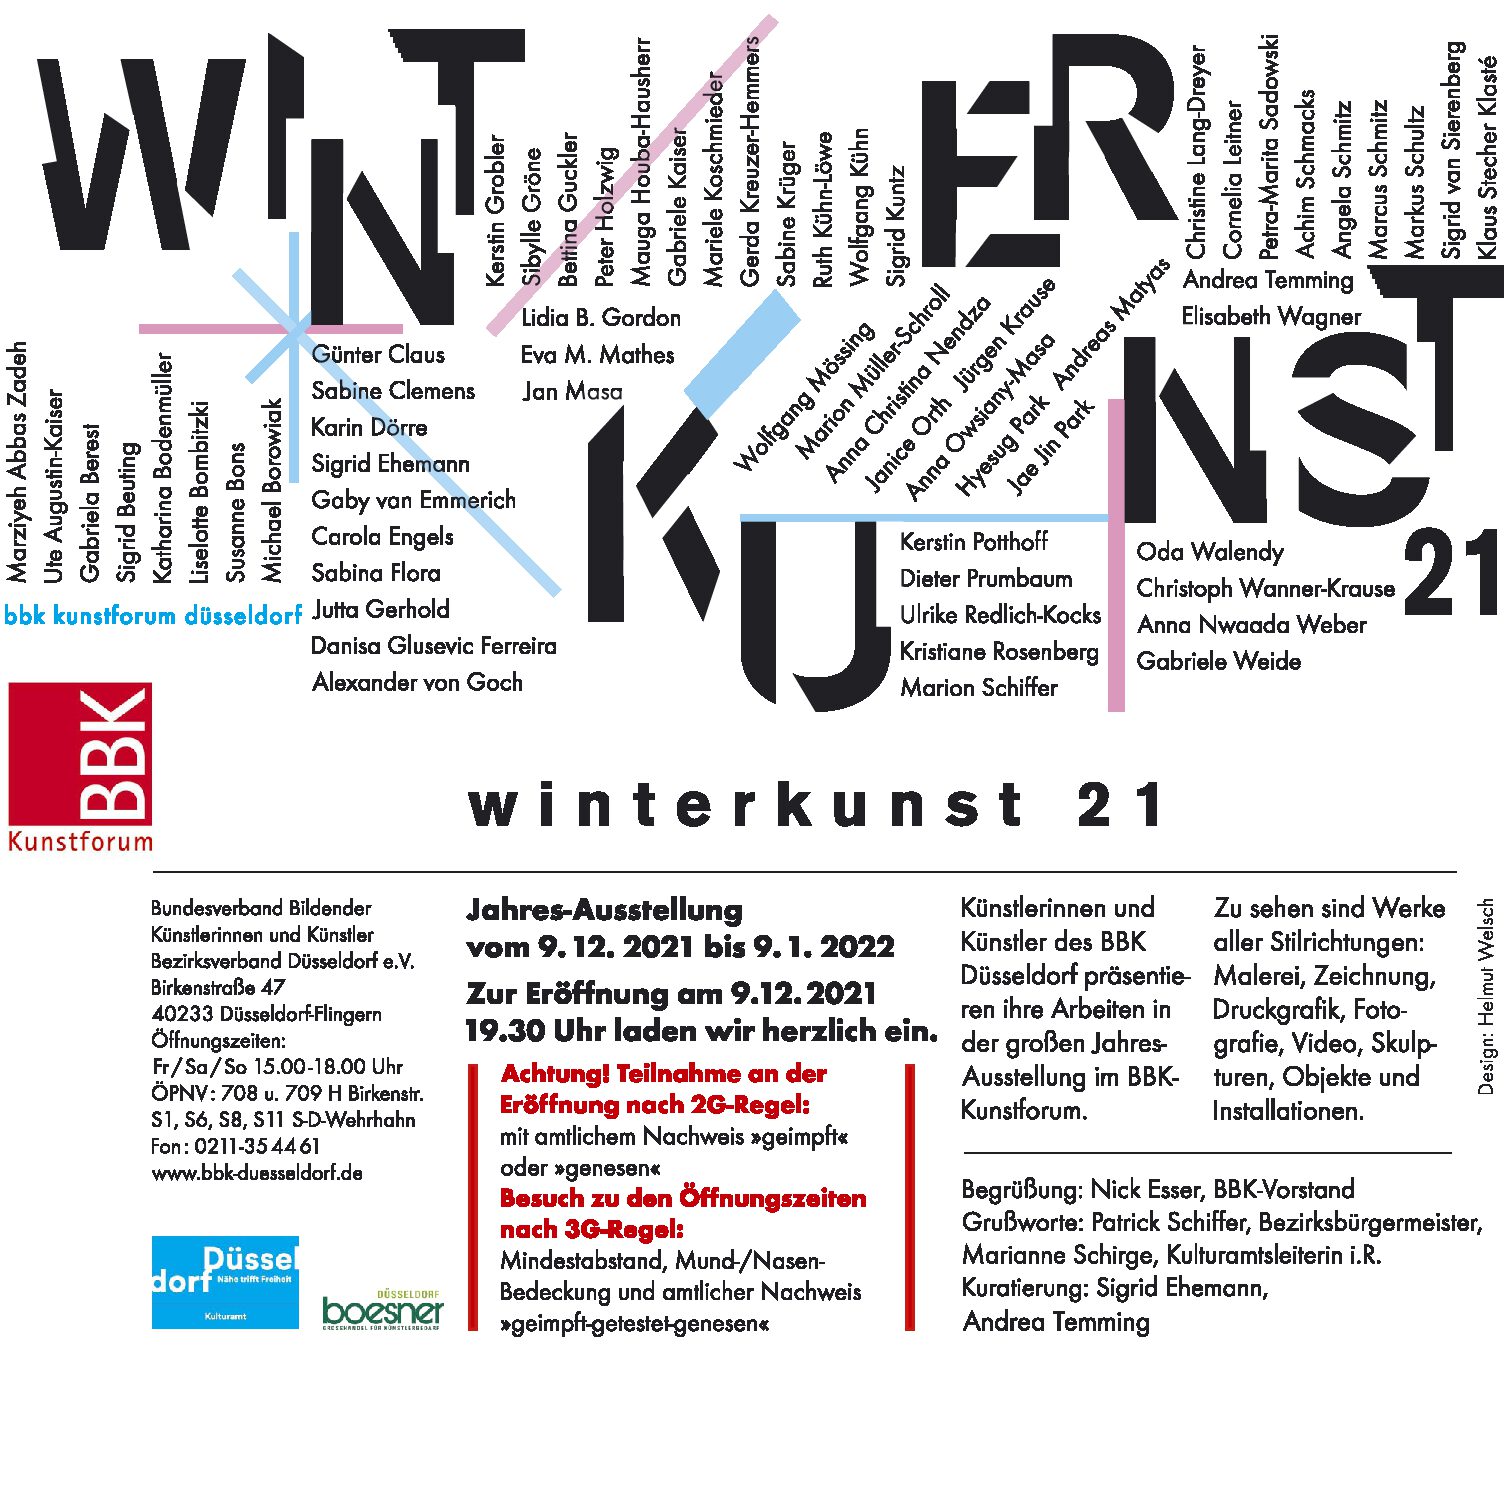 You are currently viewing Ausstellung “Winterkunst” im BBK Kunstforum Düsseldorf